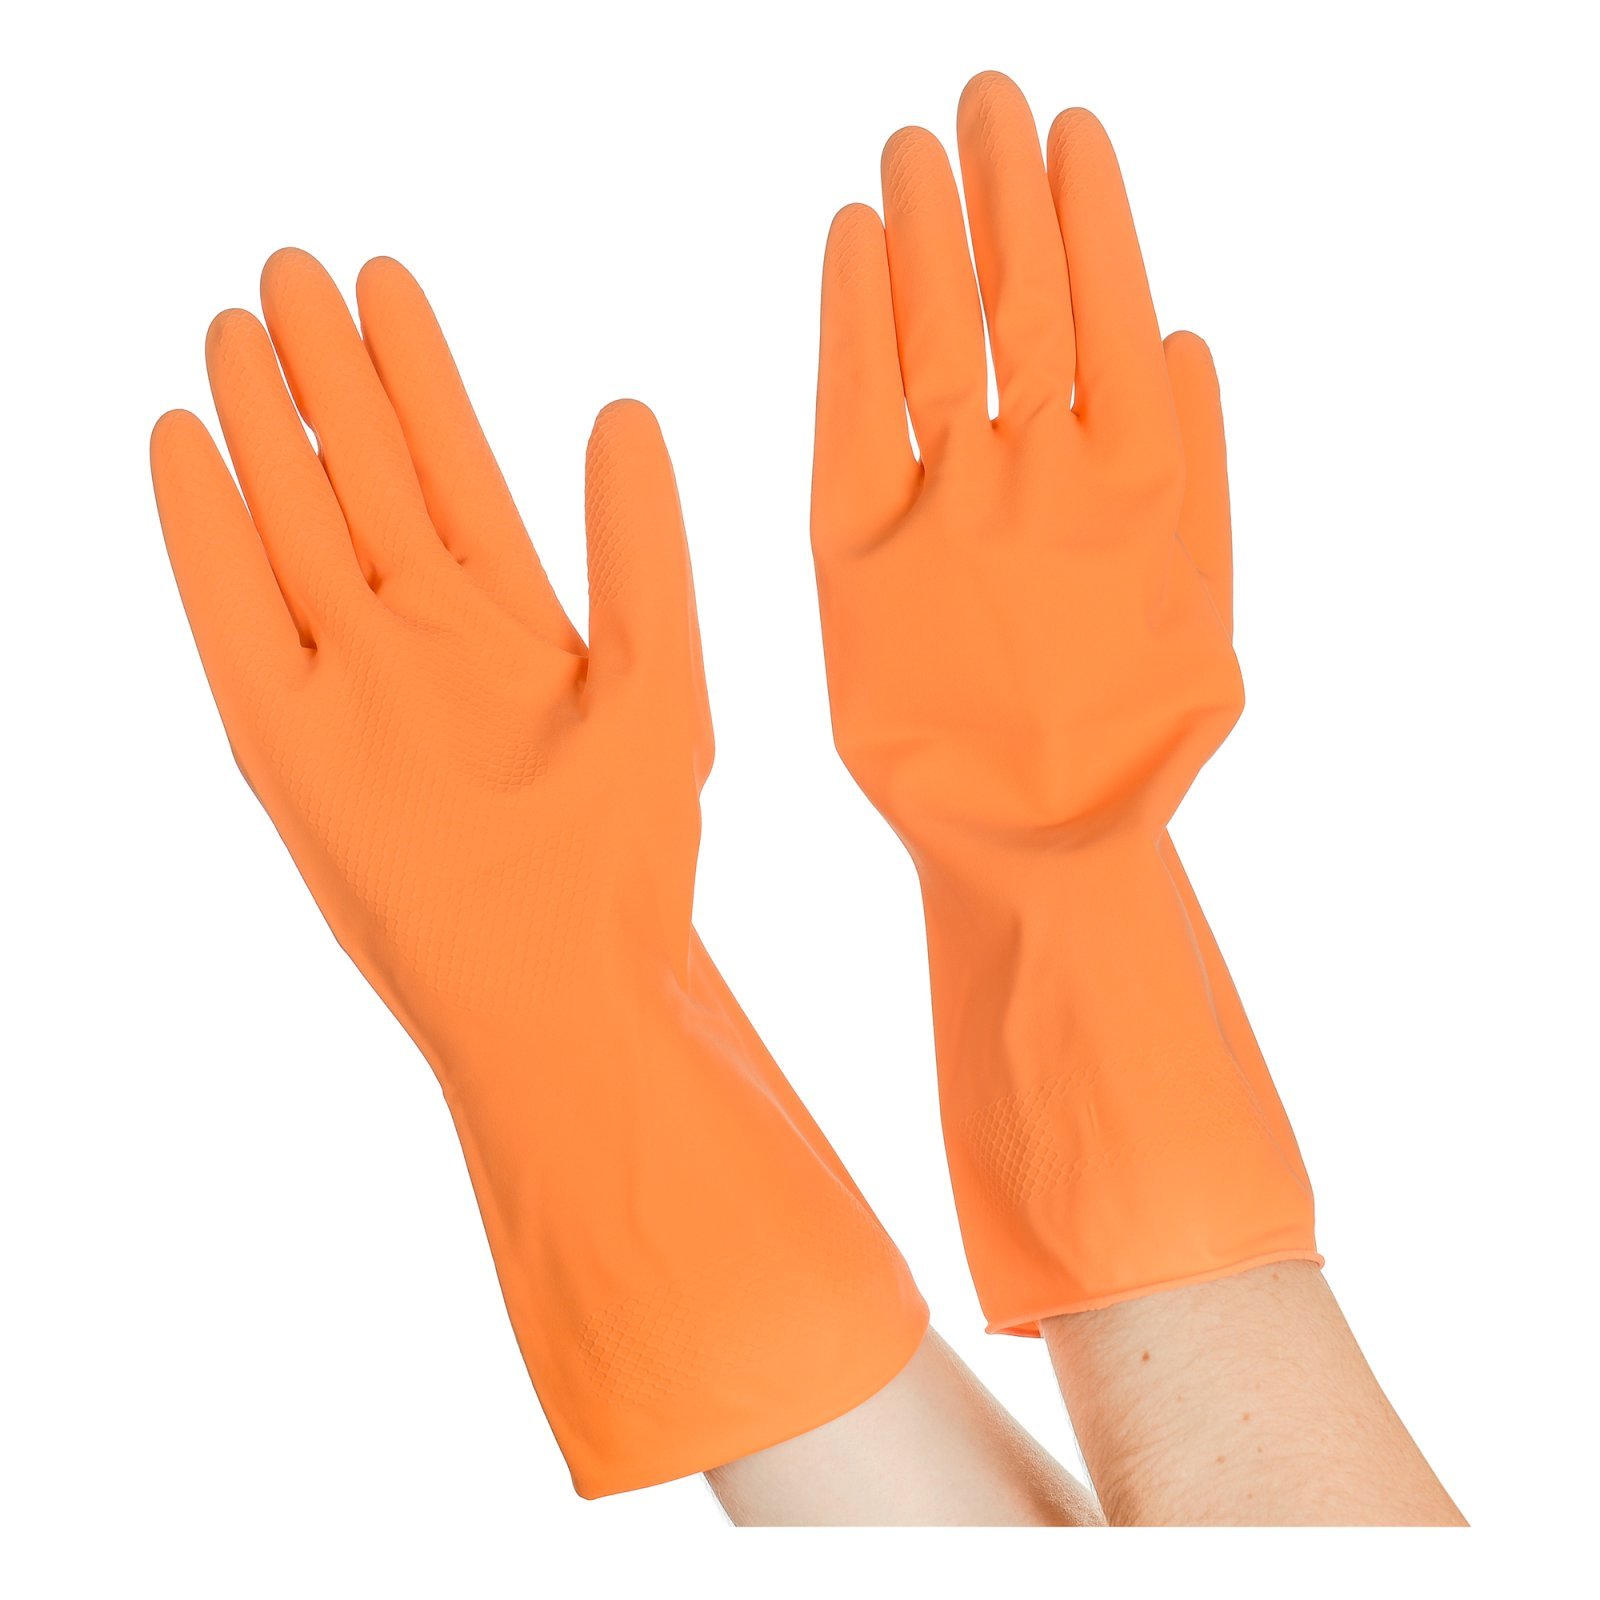 Перчатки резиновые хозяйственные Optilineприменяются для защиты рук во время уборки, стирки, мытья посуды, садовых и ремонтных рабор. Надежно защищают руки от воздействия влаги, грязи, механических повреждений. Внутреннее напыление из хлопка обеспечивает комфорт при использовании, позволяет легко снимать и надевать перчатки. Имеют противоскользящий текстурированный рисунок на ладони и пальцах для надежного захвата предметов. Размер М. Поставляются в полиэтиленовой упаковке.